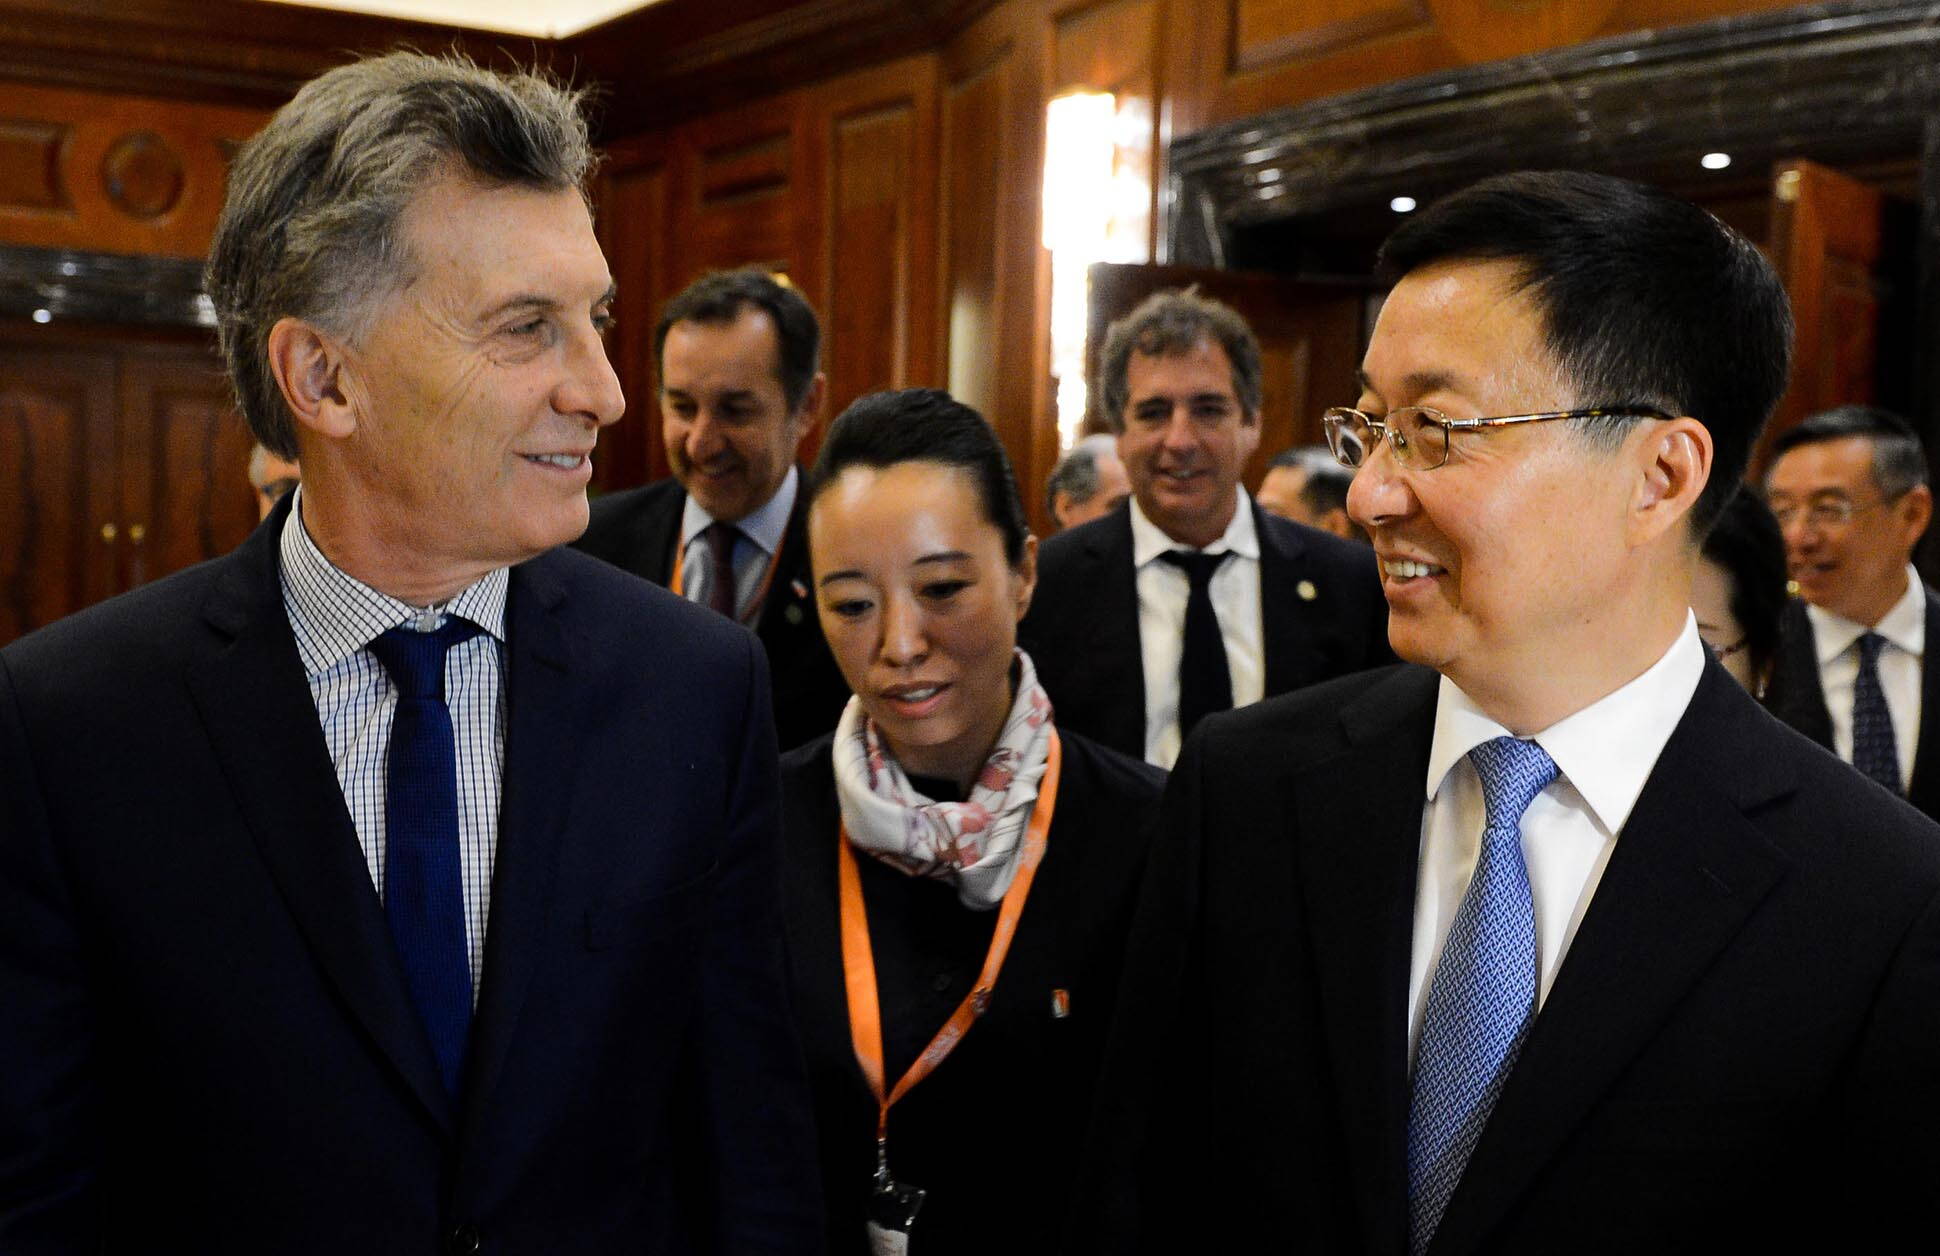 Macri: Serán muy bienvenidas las empresas chinas que quieran participar de licitaciones